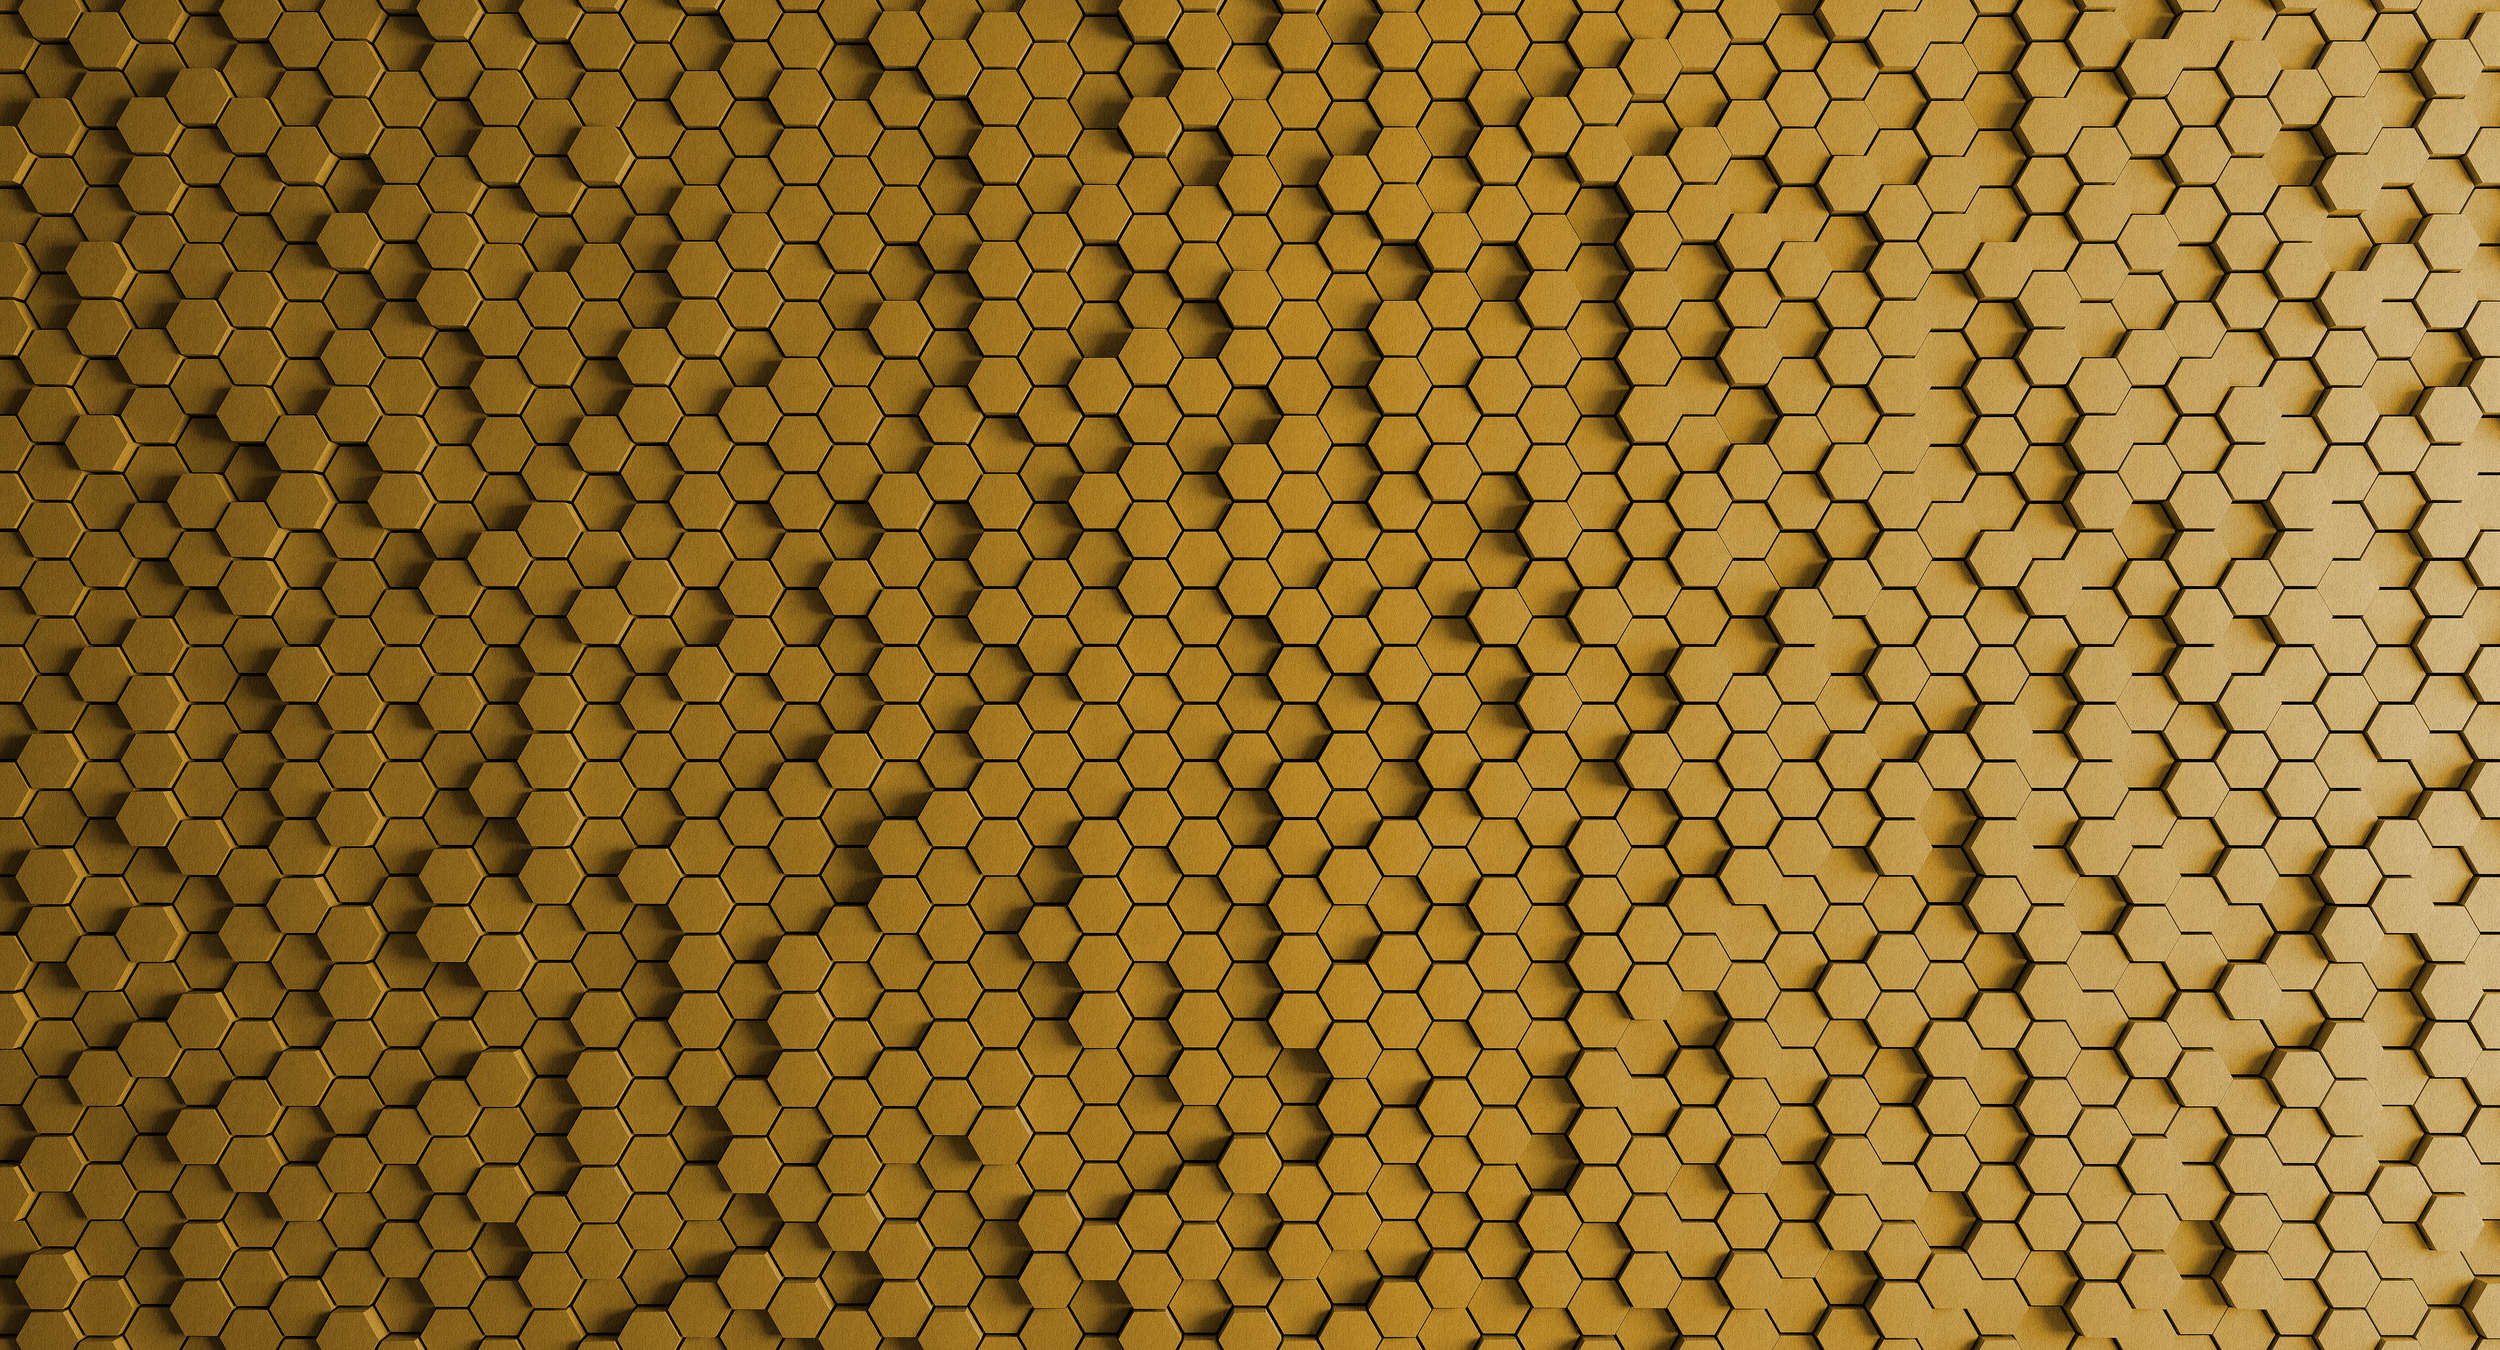             Nido de abeja 1 - Papel pintado 3D con diseño de nido de abeja amarillo en estructura de fieltro - Amarillo, Negro | Vellón liso Premium
        